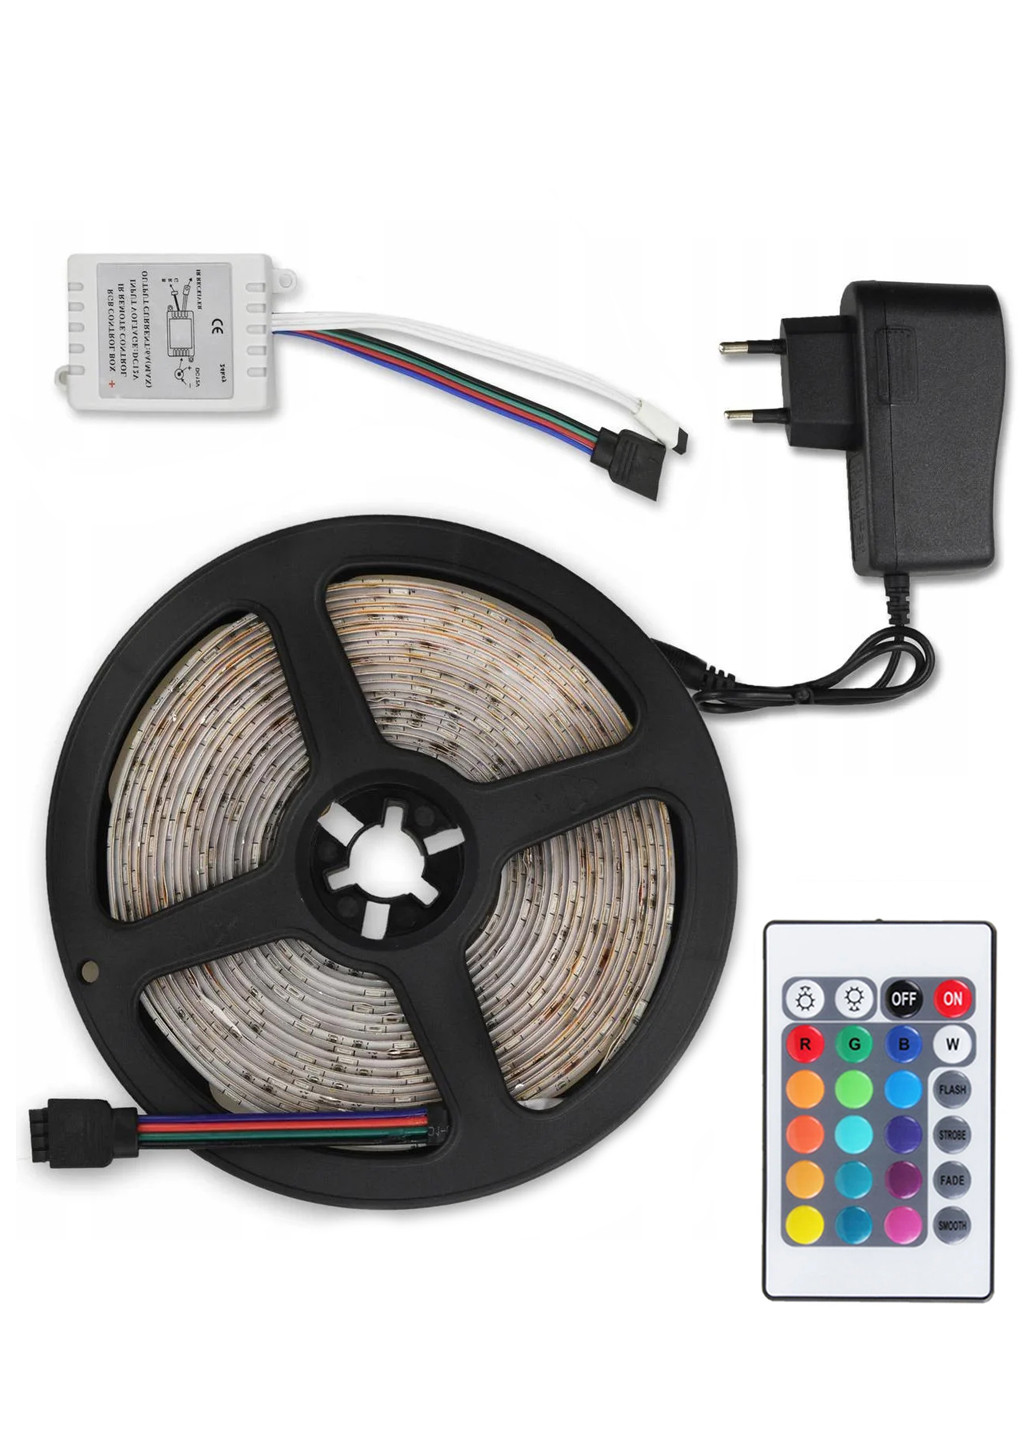 Світлодіодна RGB стрічка 270 LED 5м + пульт + блок живлення + контролер UFT ls01 (251198626)